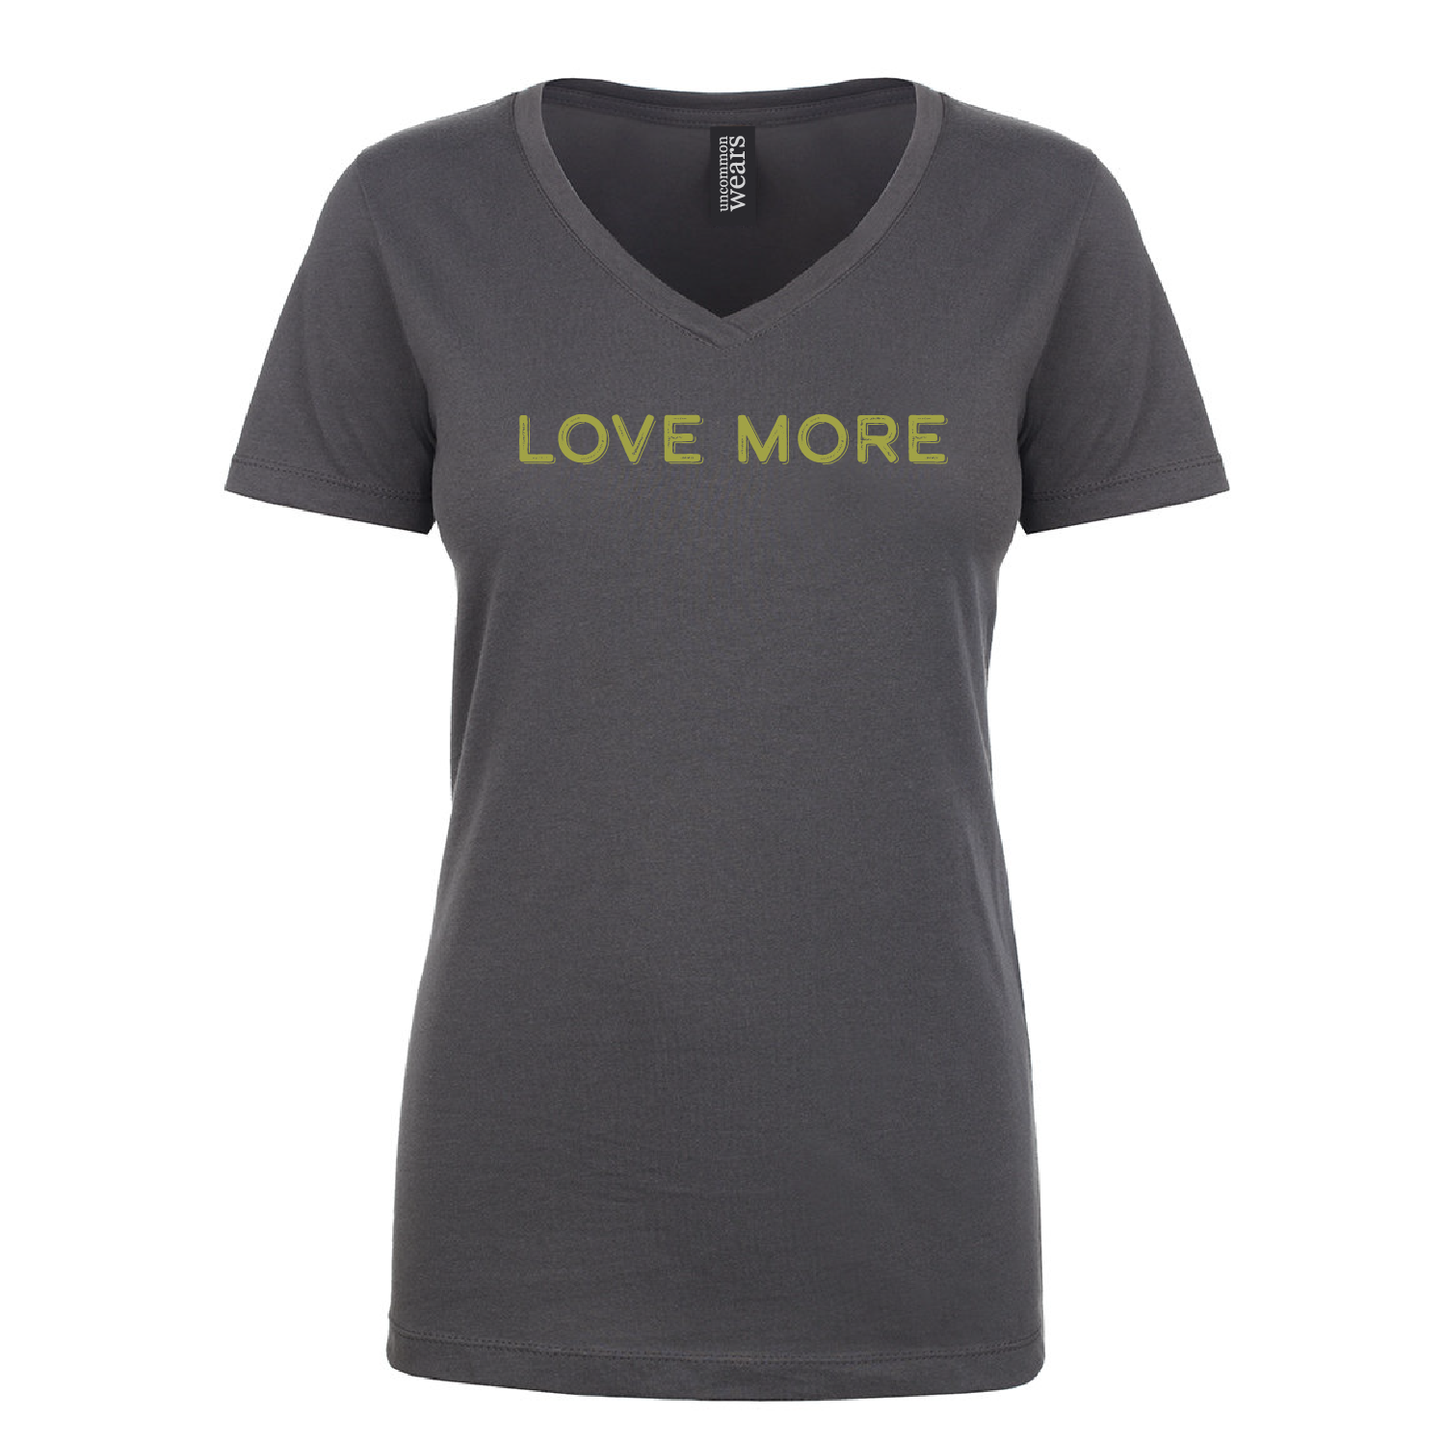 Love More Dark Gray T-Shirt - 014